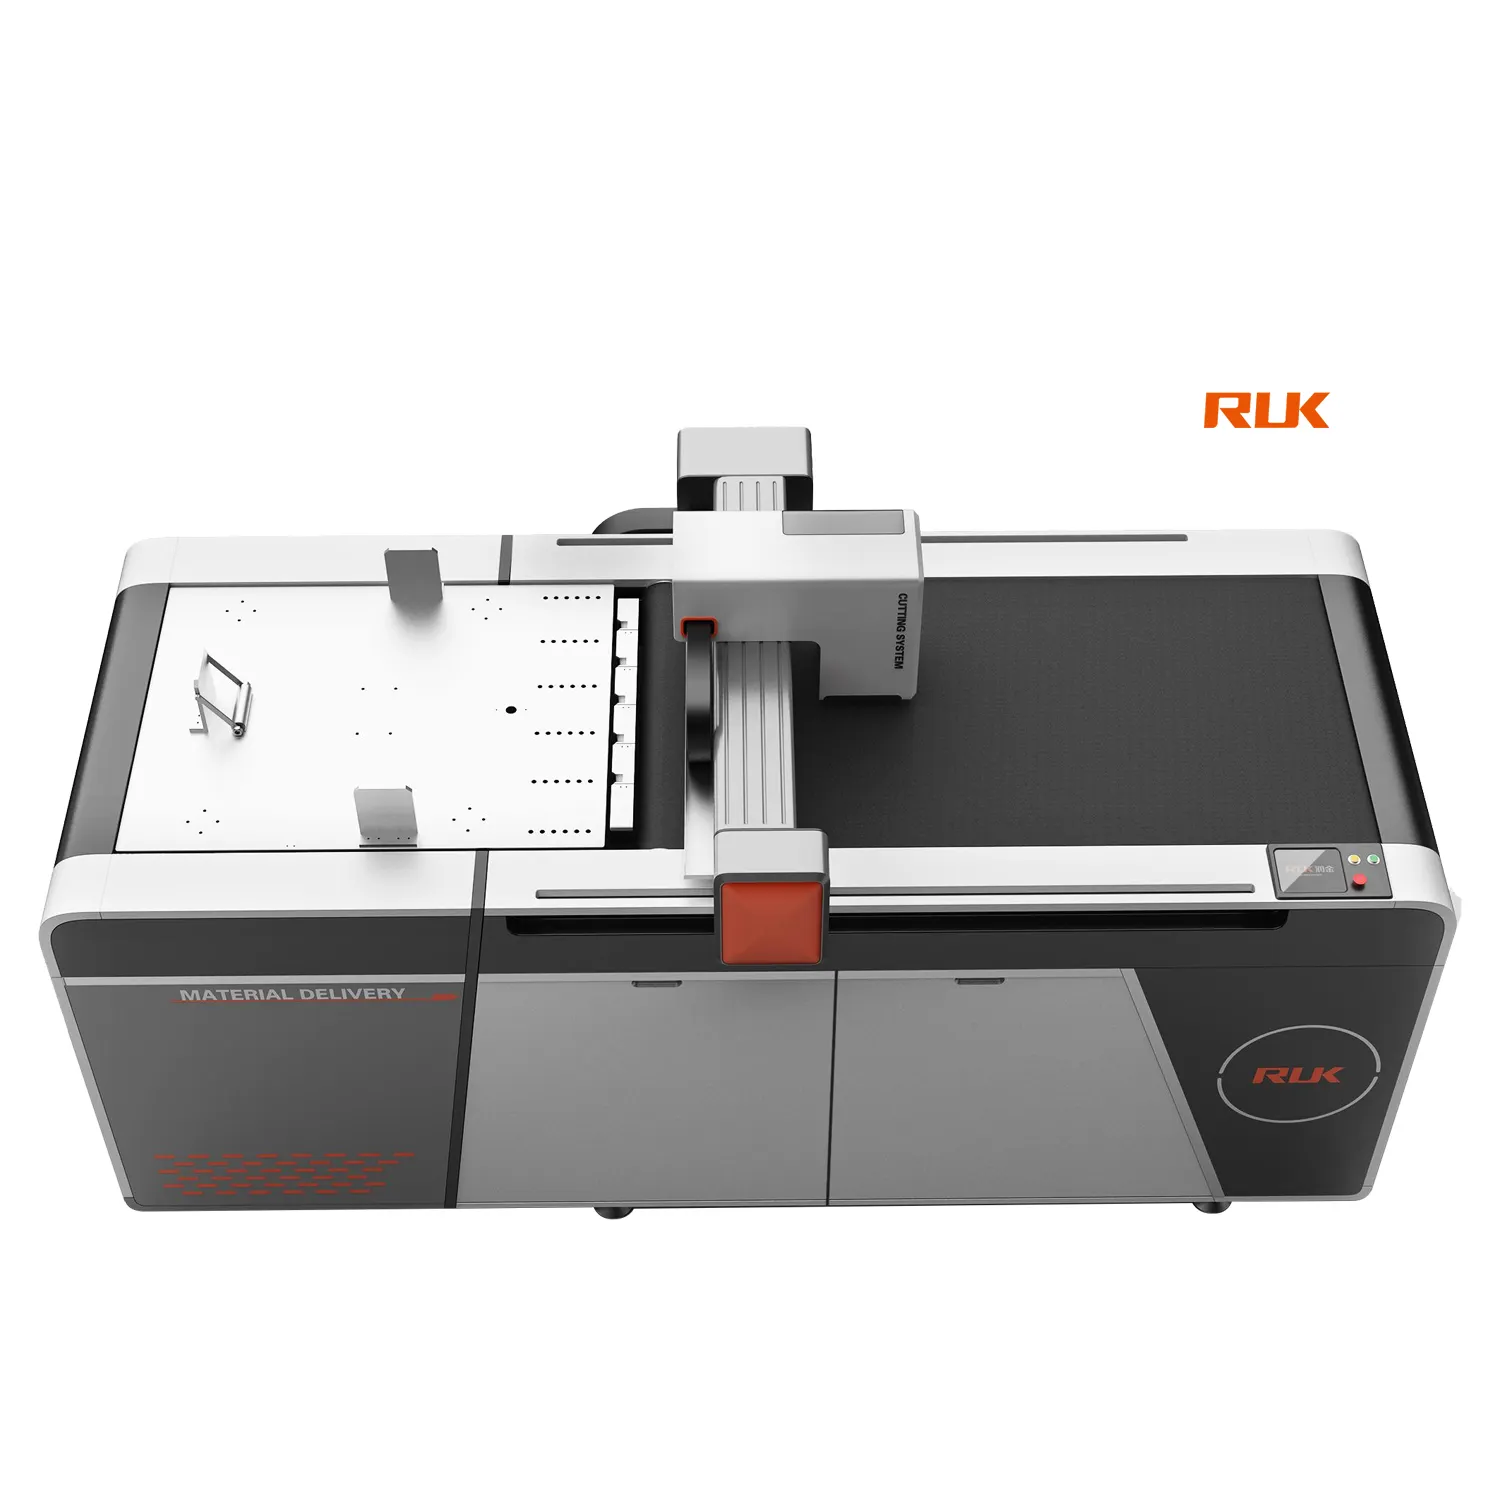 RUK MKC เครื่องตัดไดคัทแบบดิจิตอล กล่องกระดาษ เครื่องตัดแบบแท่น เครื่องตัดกาวในตัว